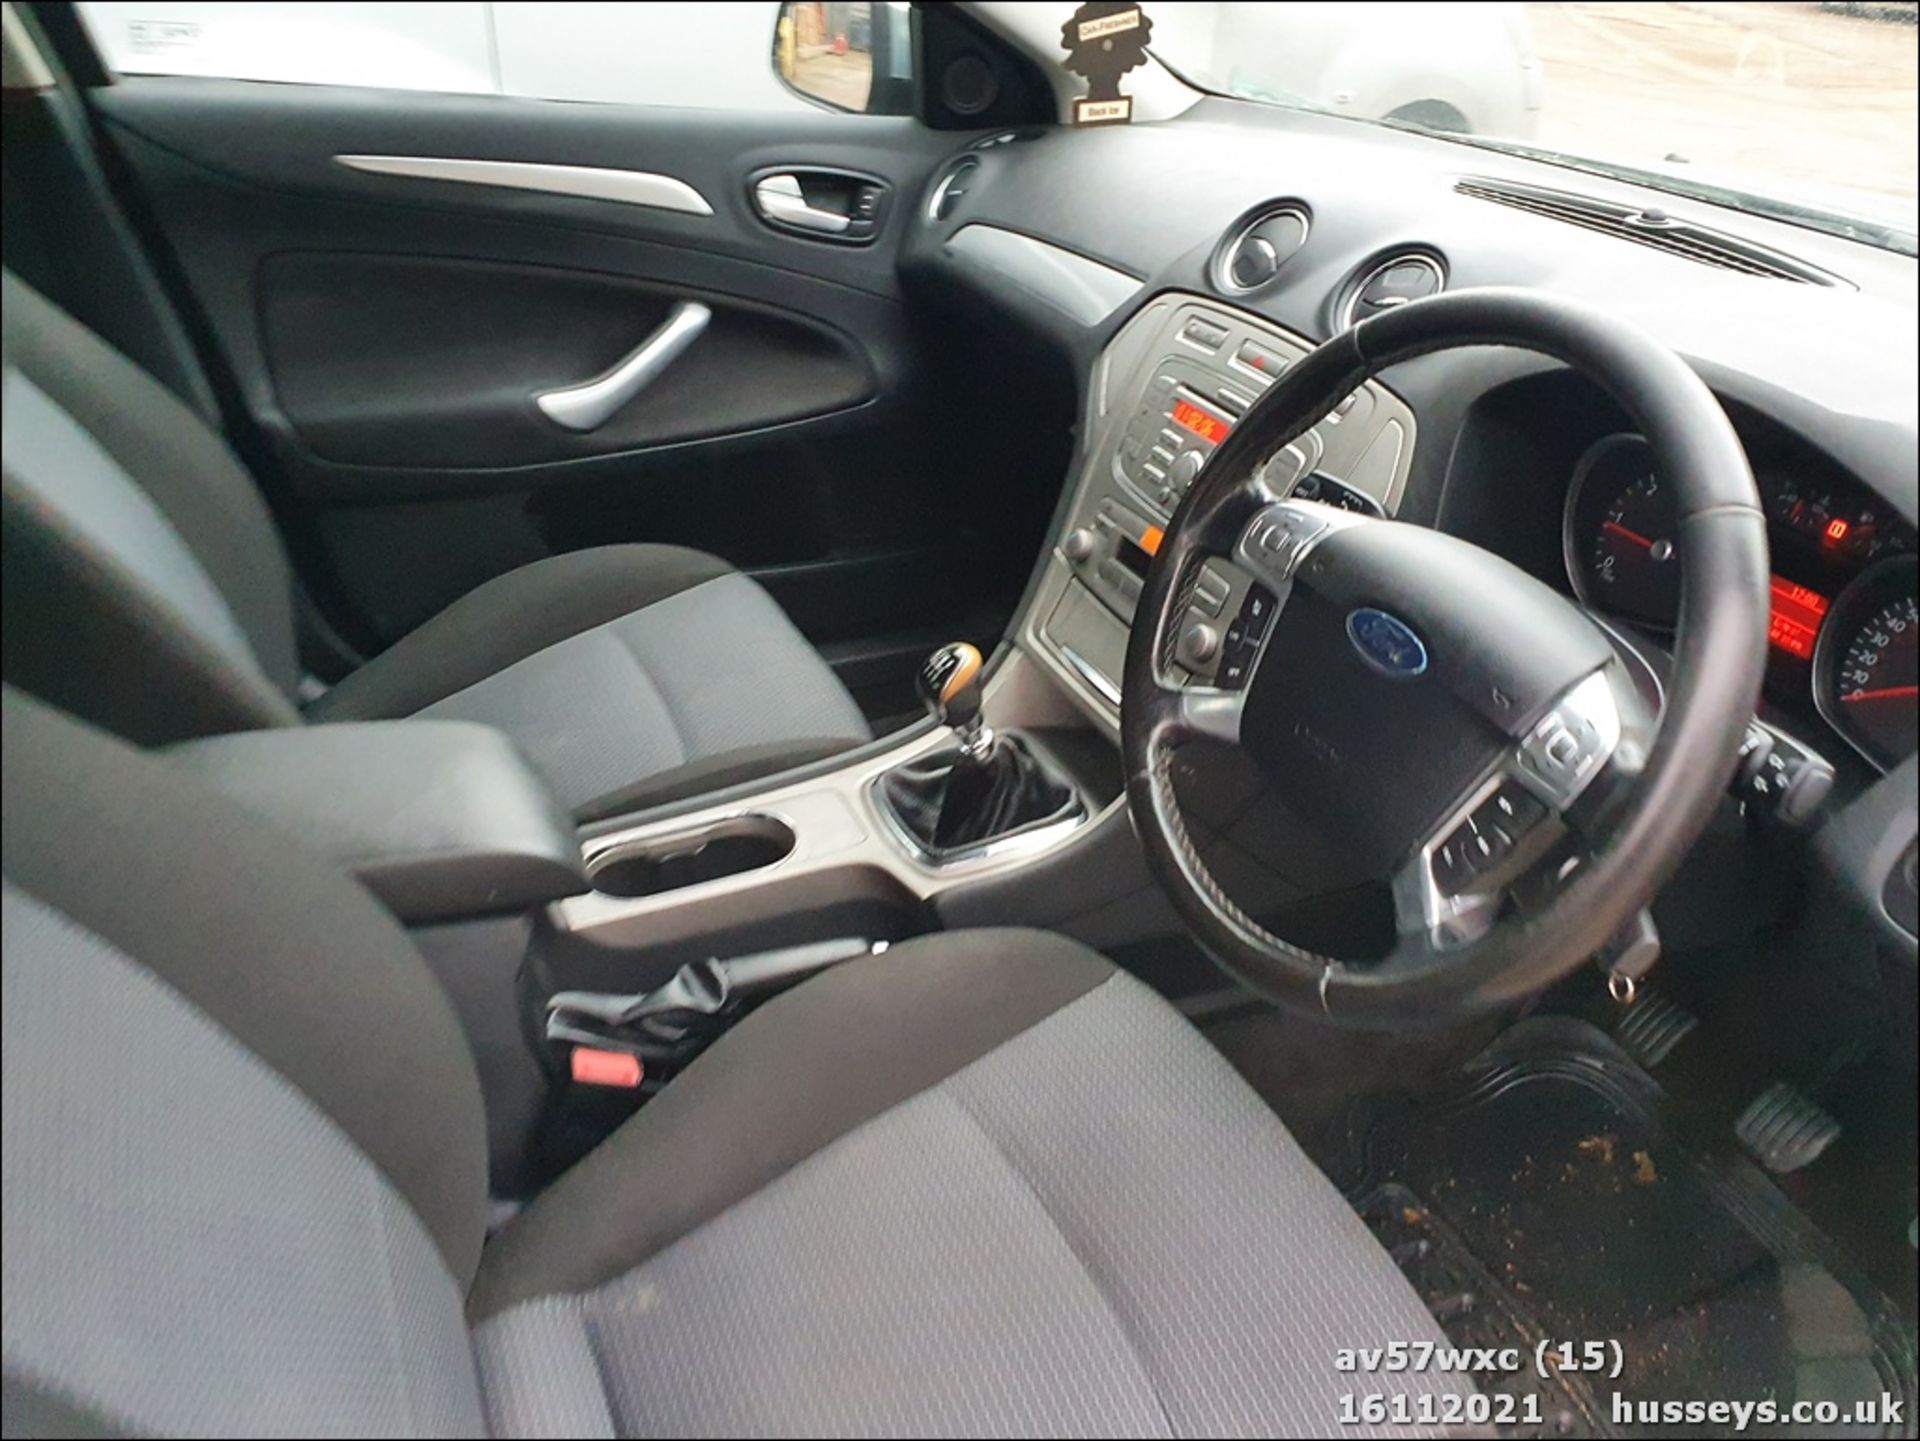 07/57 FORD MONDEO ZETEC TDCI 140 - 1997cc 5dr Hatchback (Grey, 181k) - Image 36 of 42